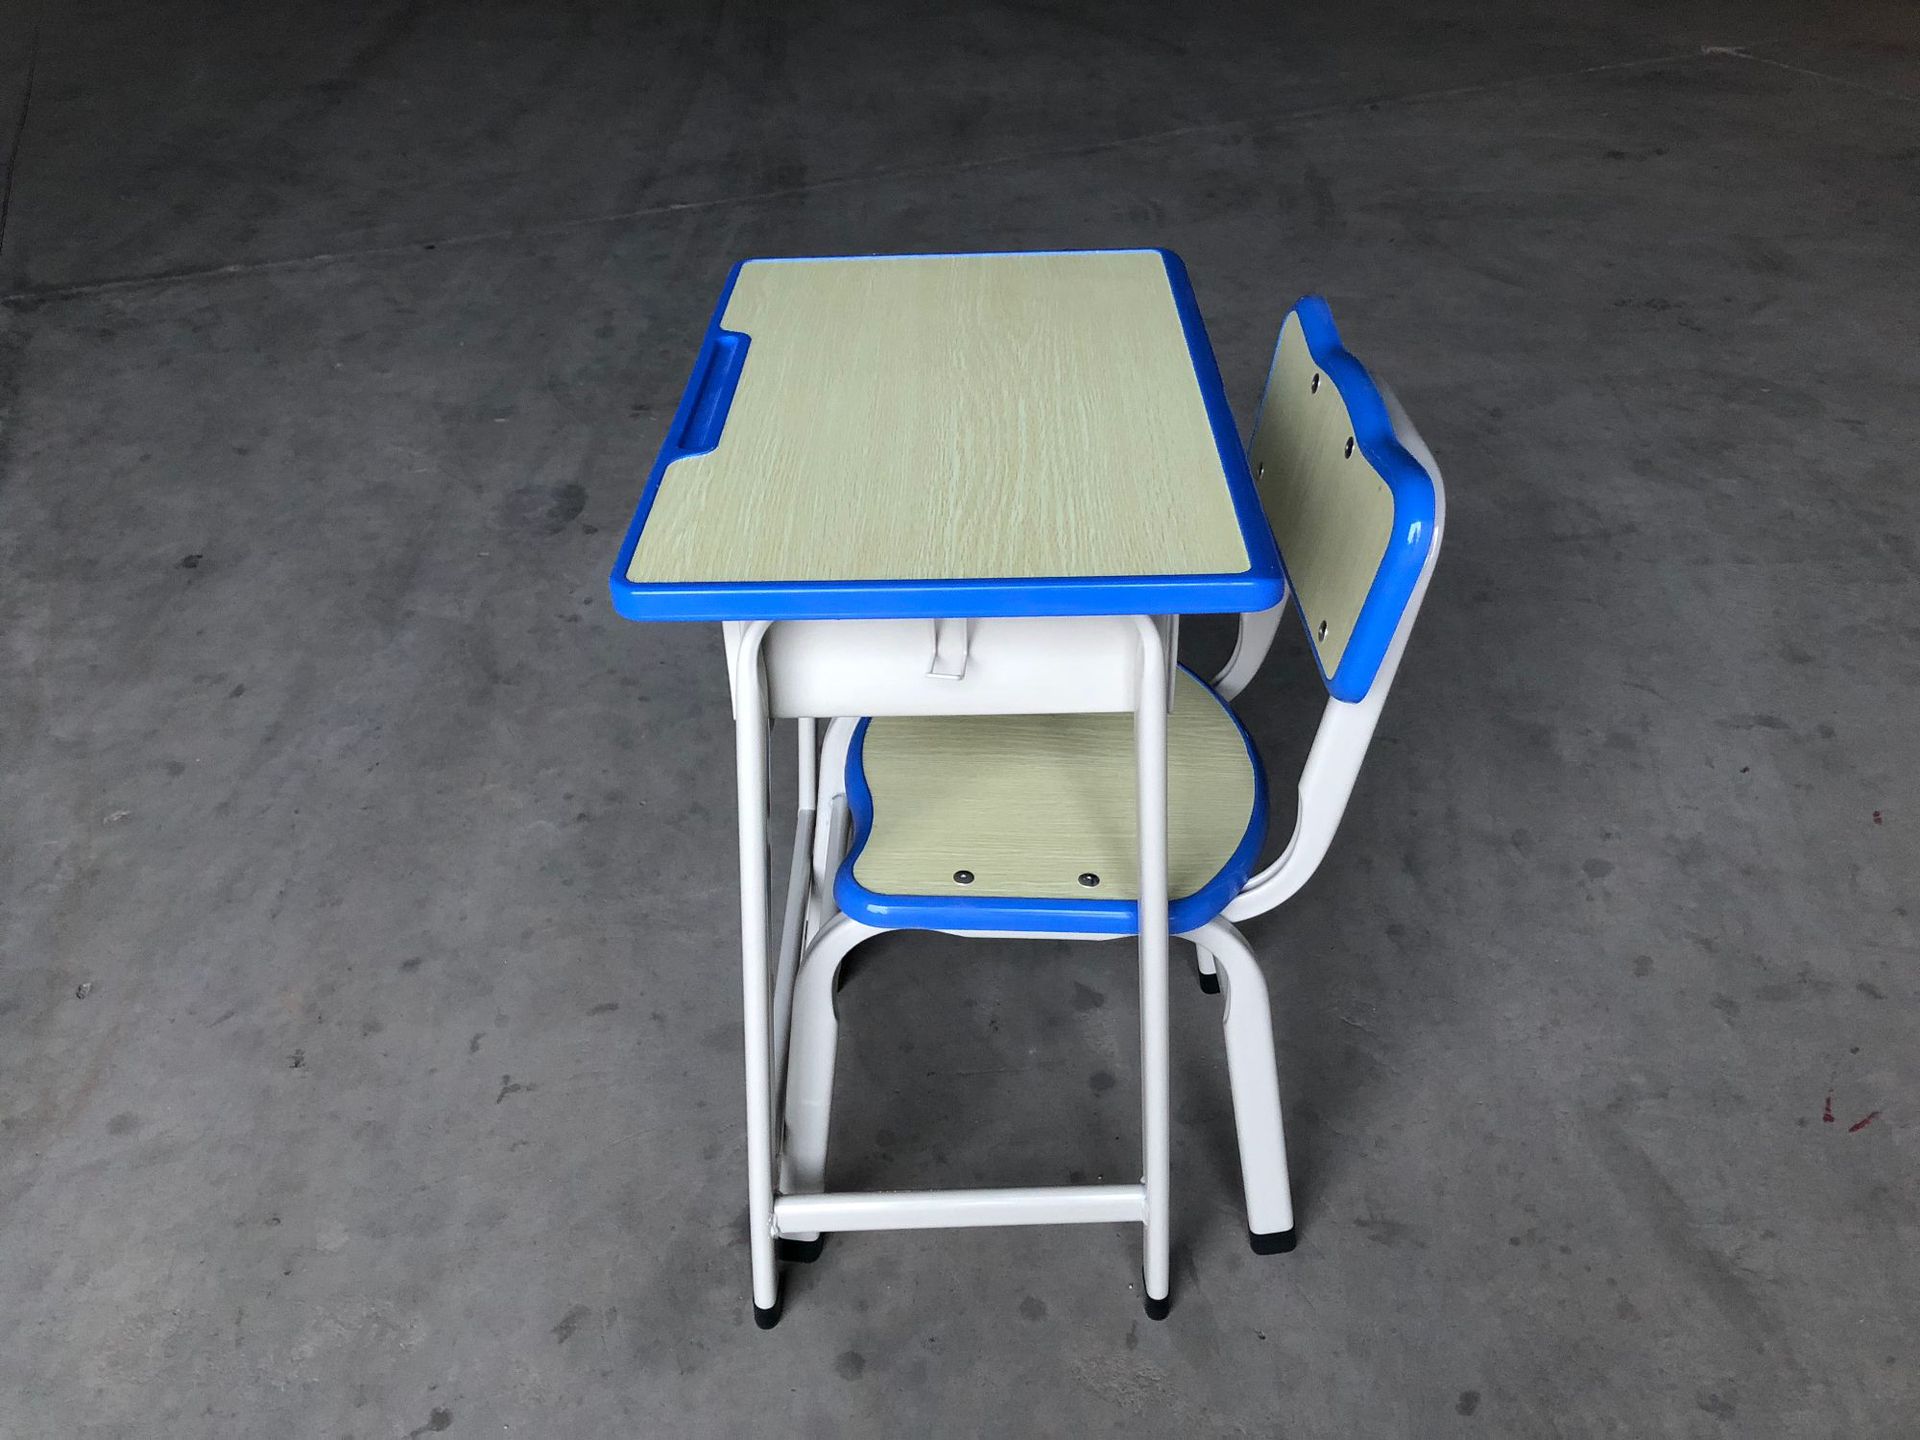 注塑封边中纤板课桌椅中小学生单人补习班桌书桌台椅批发厂家直销示例图6